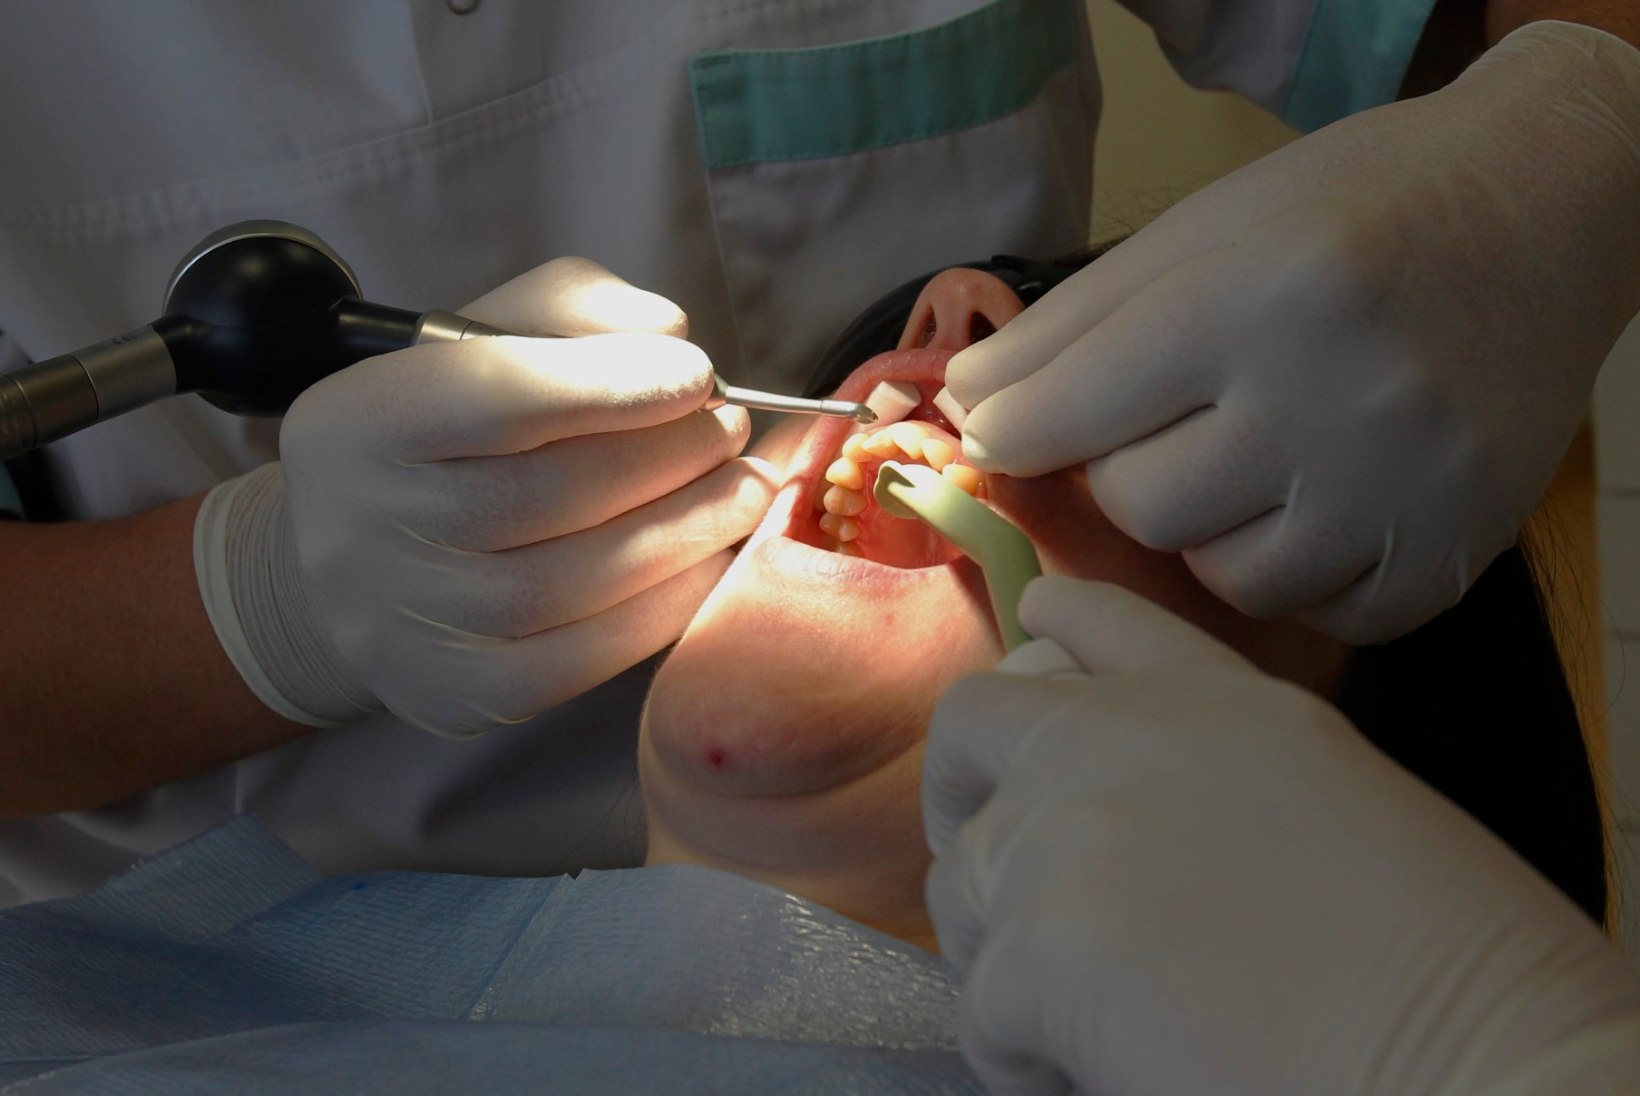 Hiiumaal võib hambaarsti järjekorras oodata kuni kuus kuud